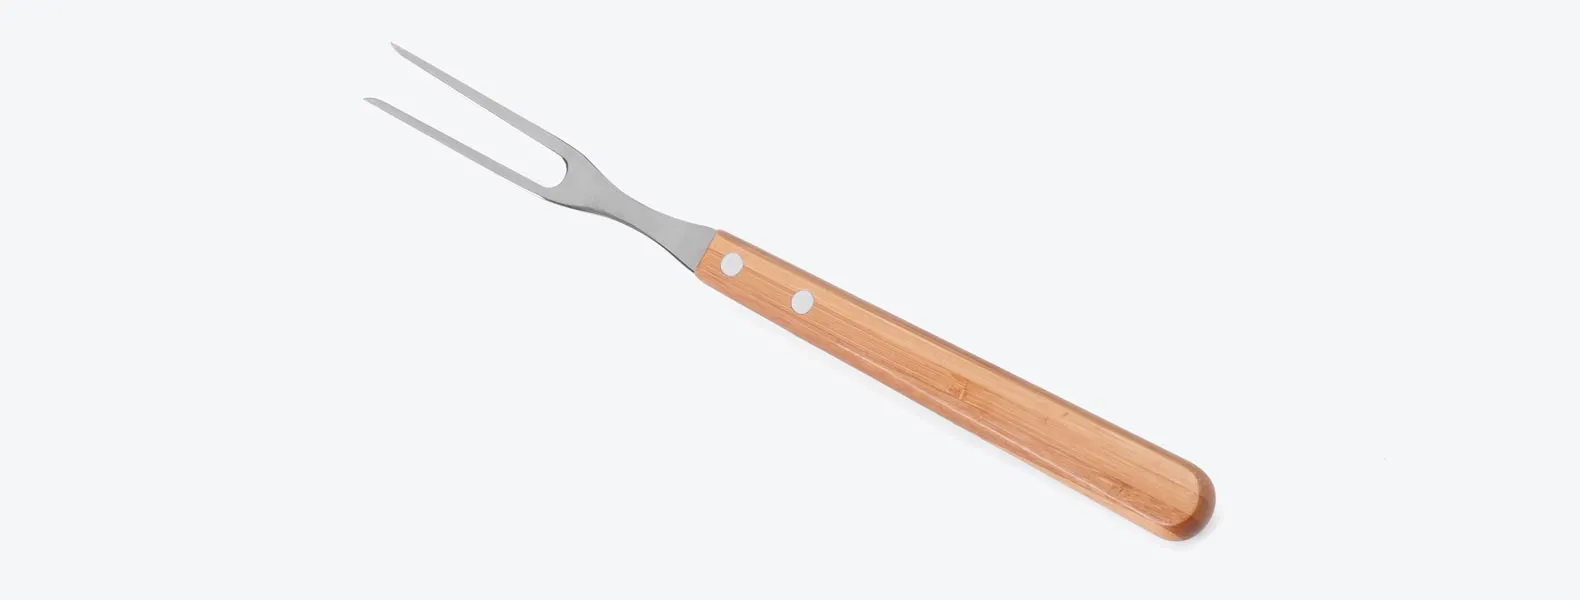 Conjunto de Faca em bambu/Aço Inox. Acompanha faca 8'', faca Santoku e garfo em bambu/Inox. Como cortesia, na faca 8 fazemos uma gravação com os cortes do boi.